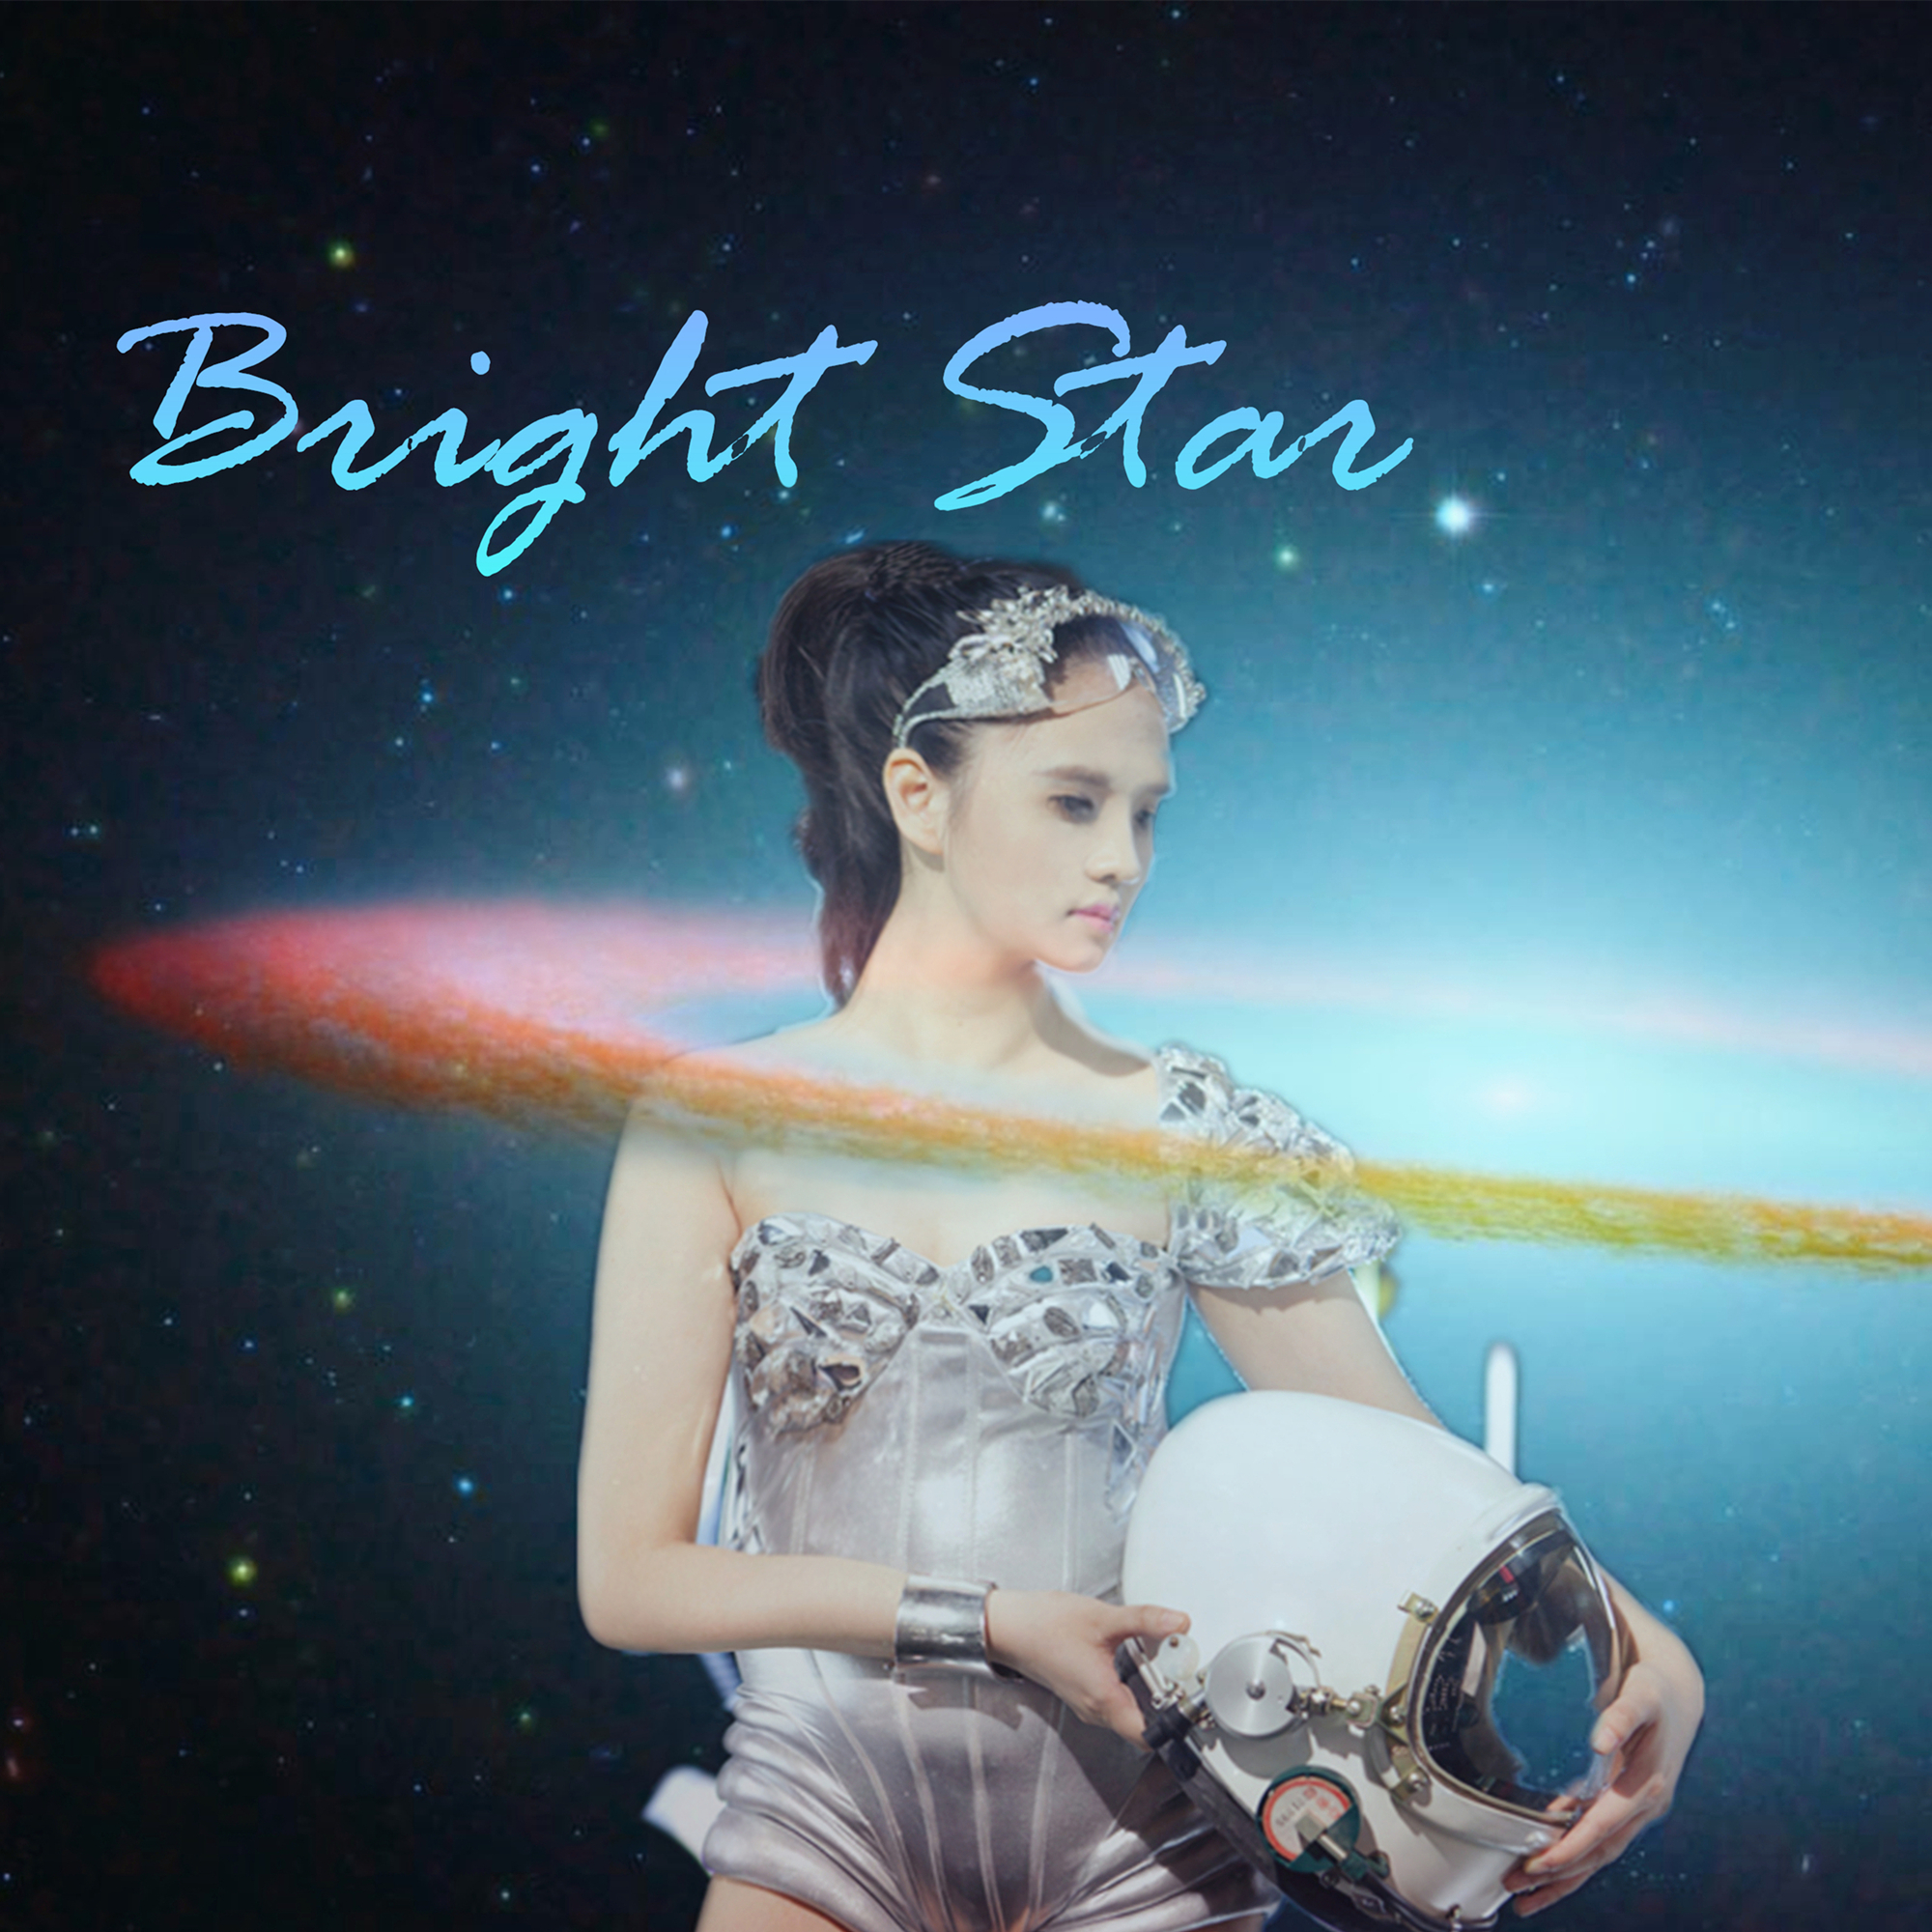 Bright Star(湯夢迪演唱歌曲)